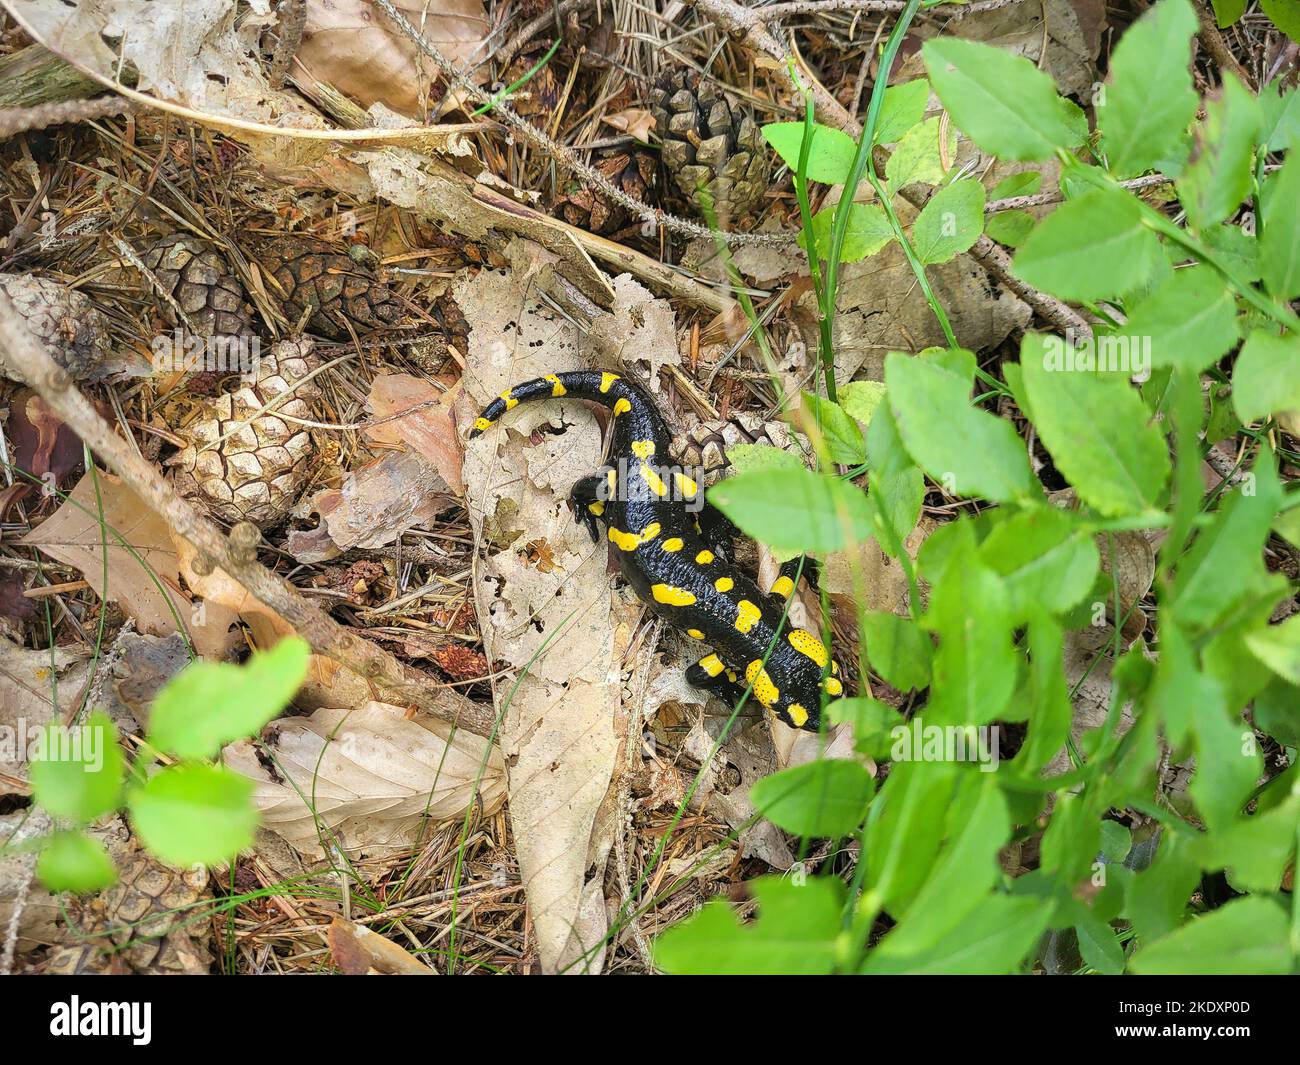 Austria, el fuego de salamandra en el suelo del bosque Foto de stock